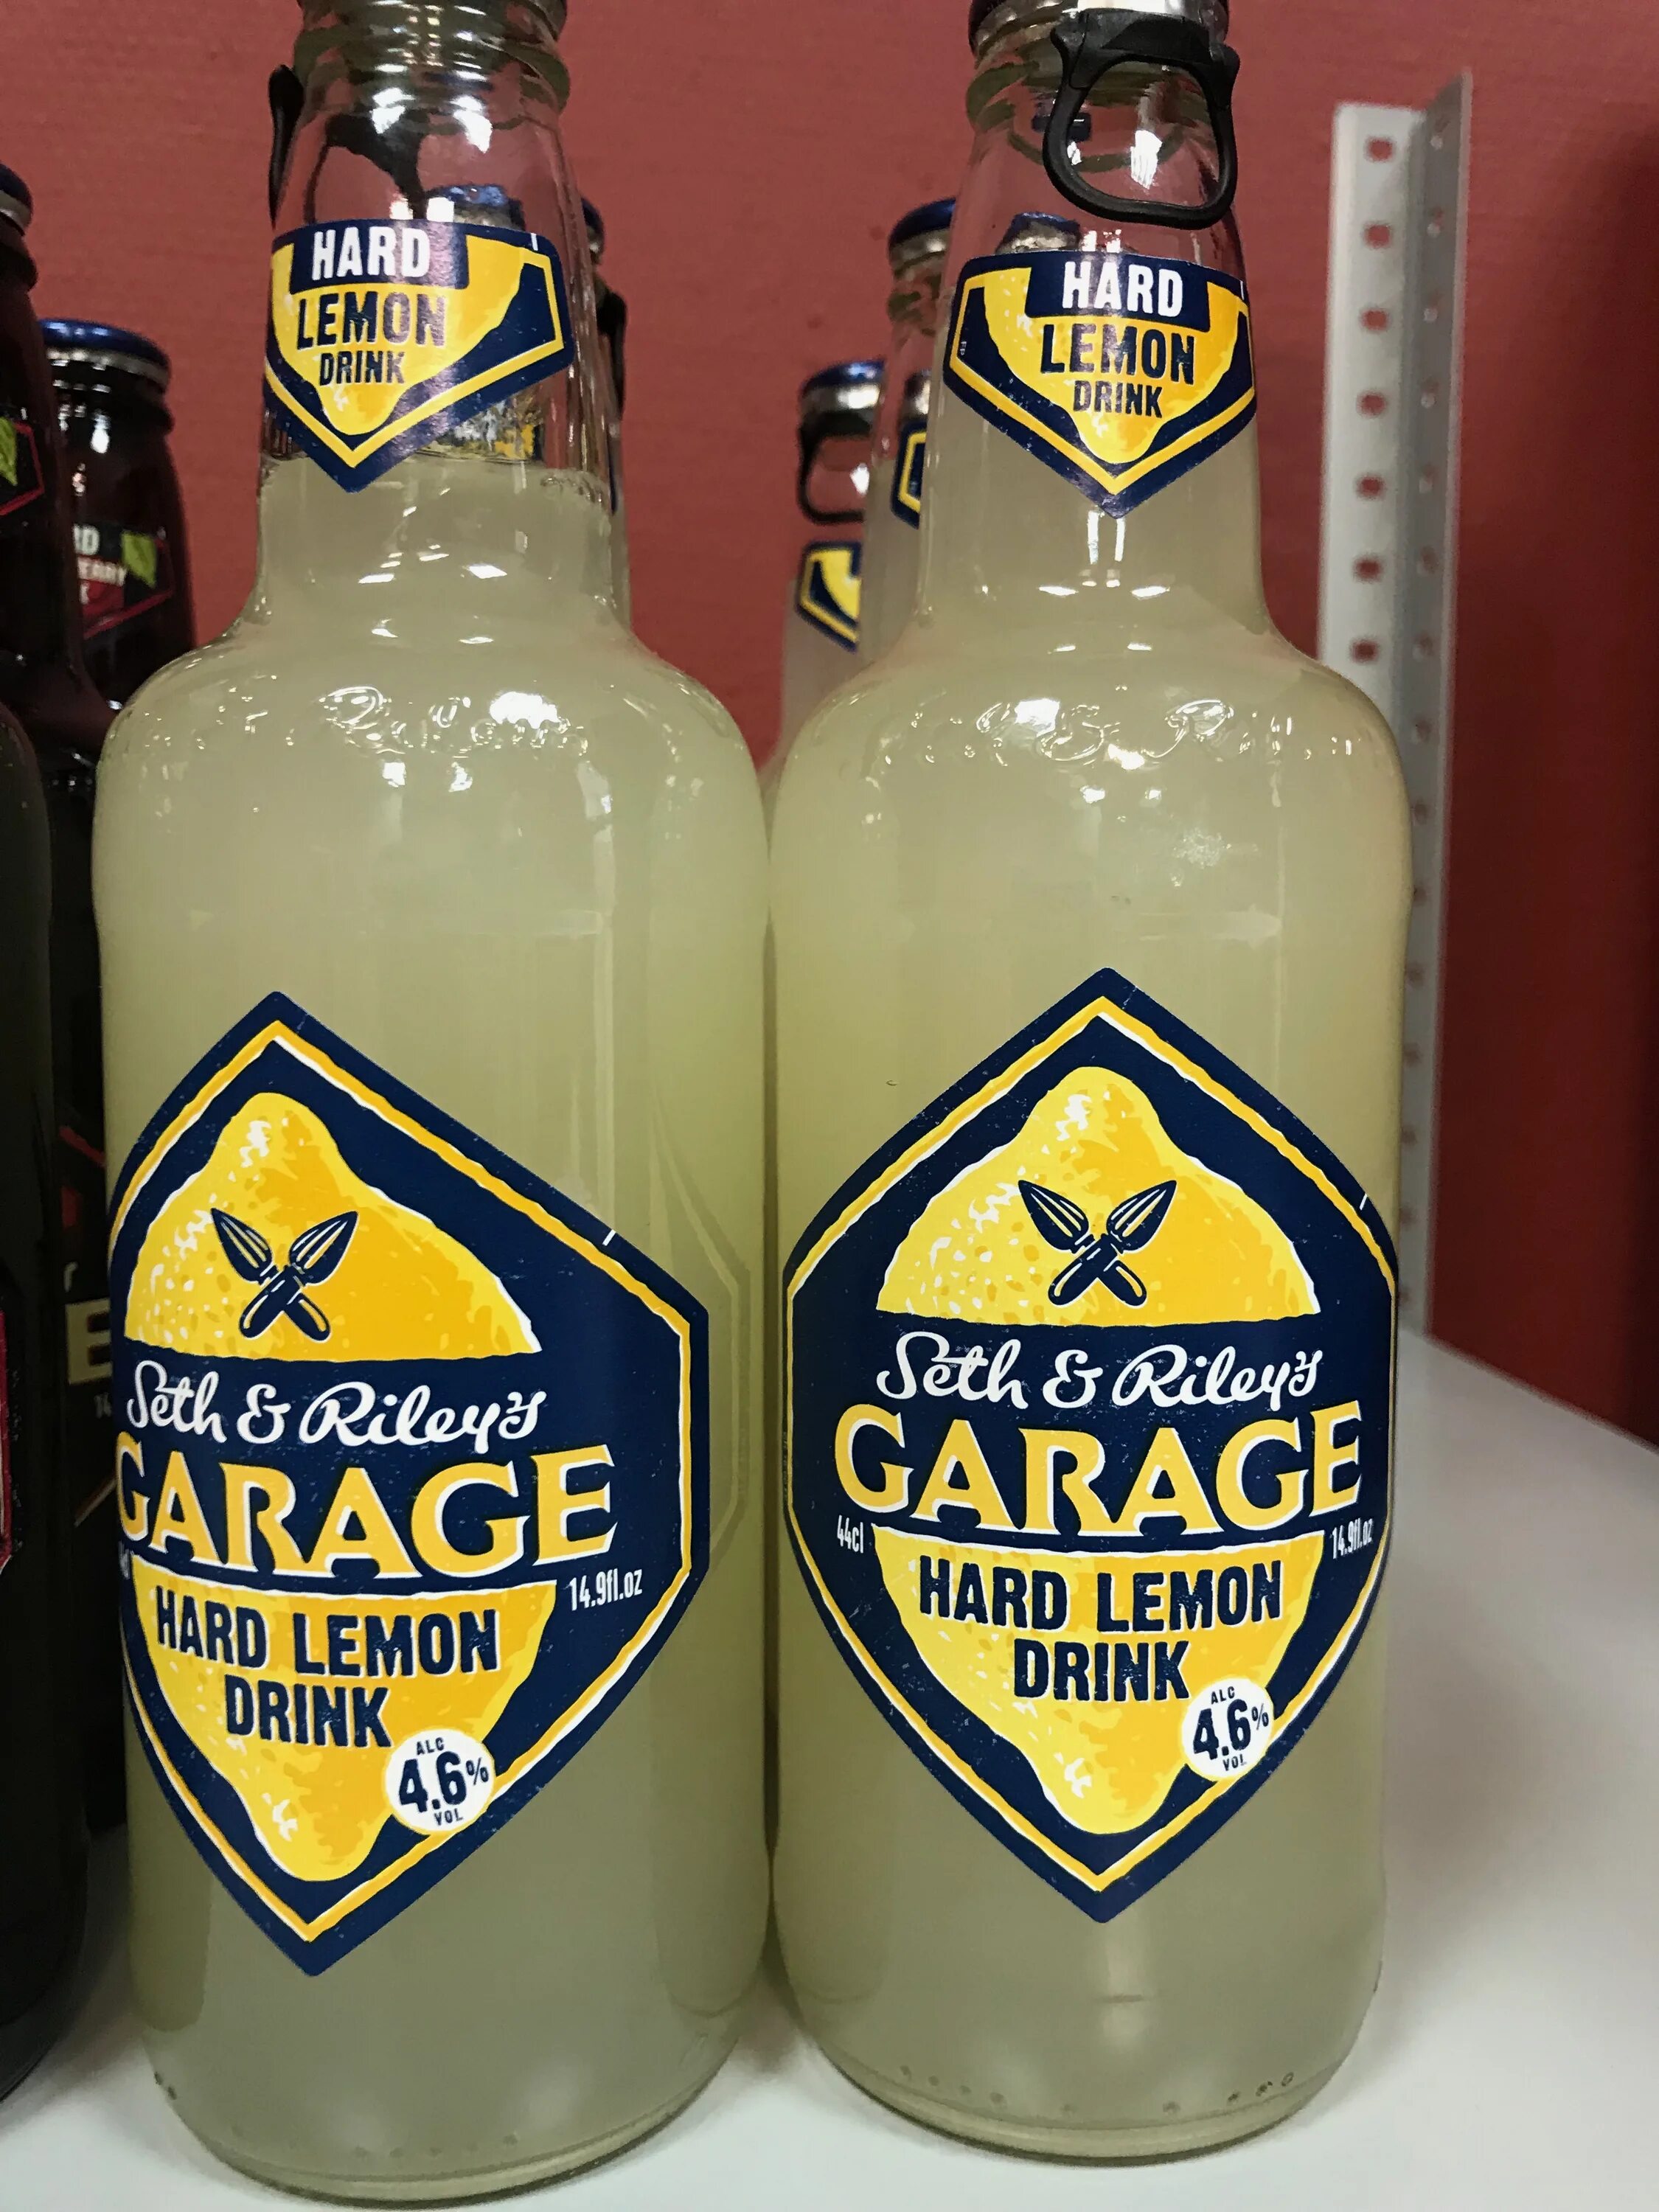 Seth riley garage. Seth Riley s Garage вкусы. Лимонный пивной напиток Garage. Пиво Seth and Riley's. Сет энд Райлис гараж.